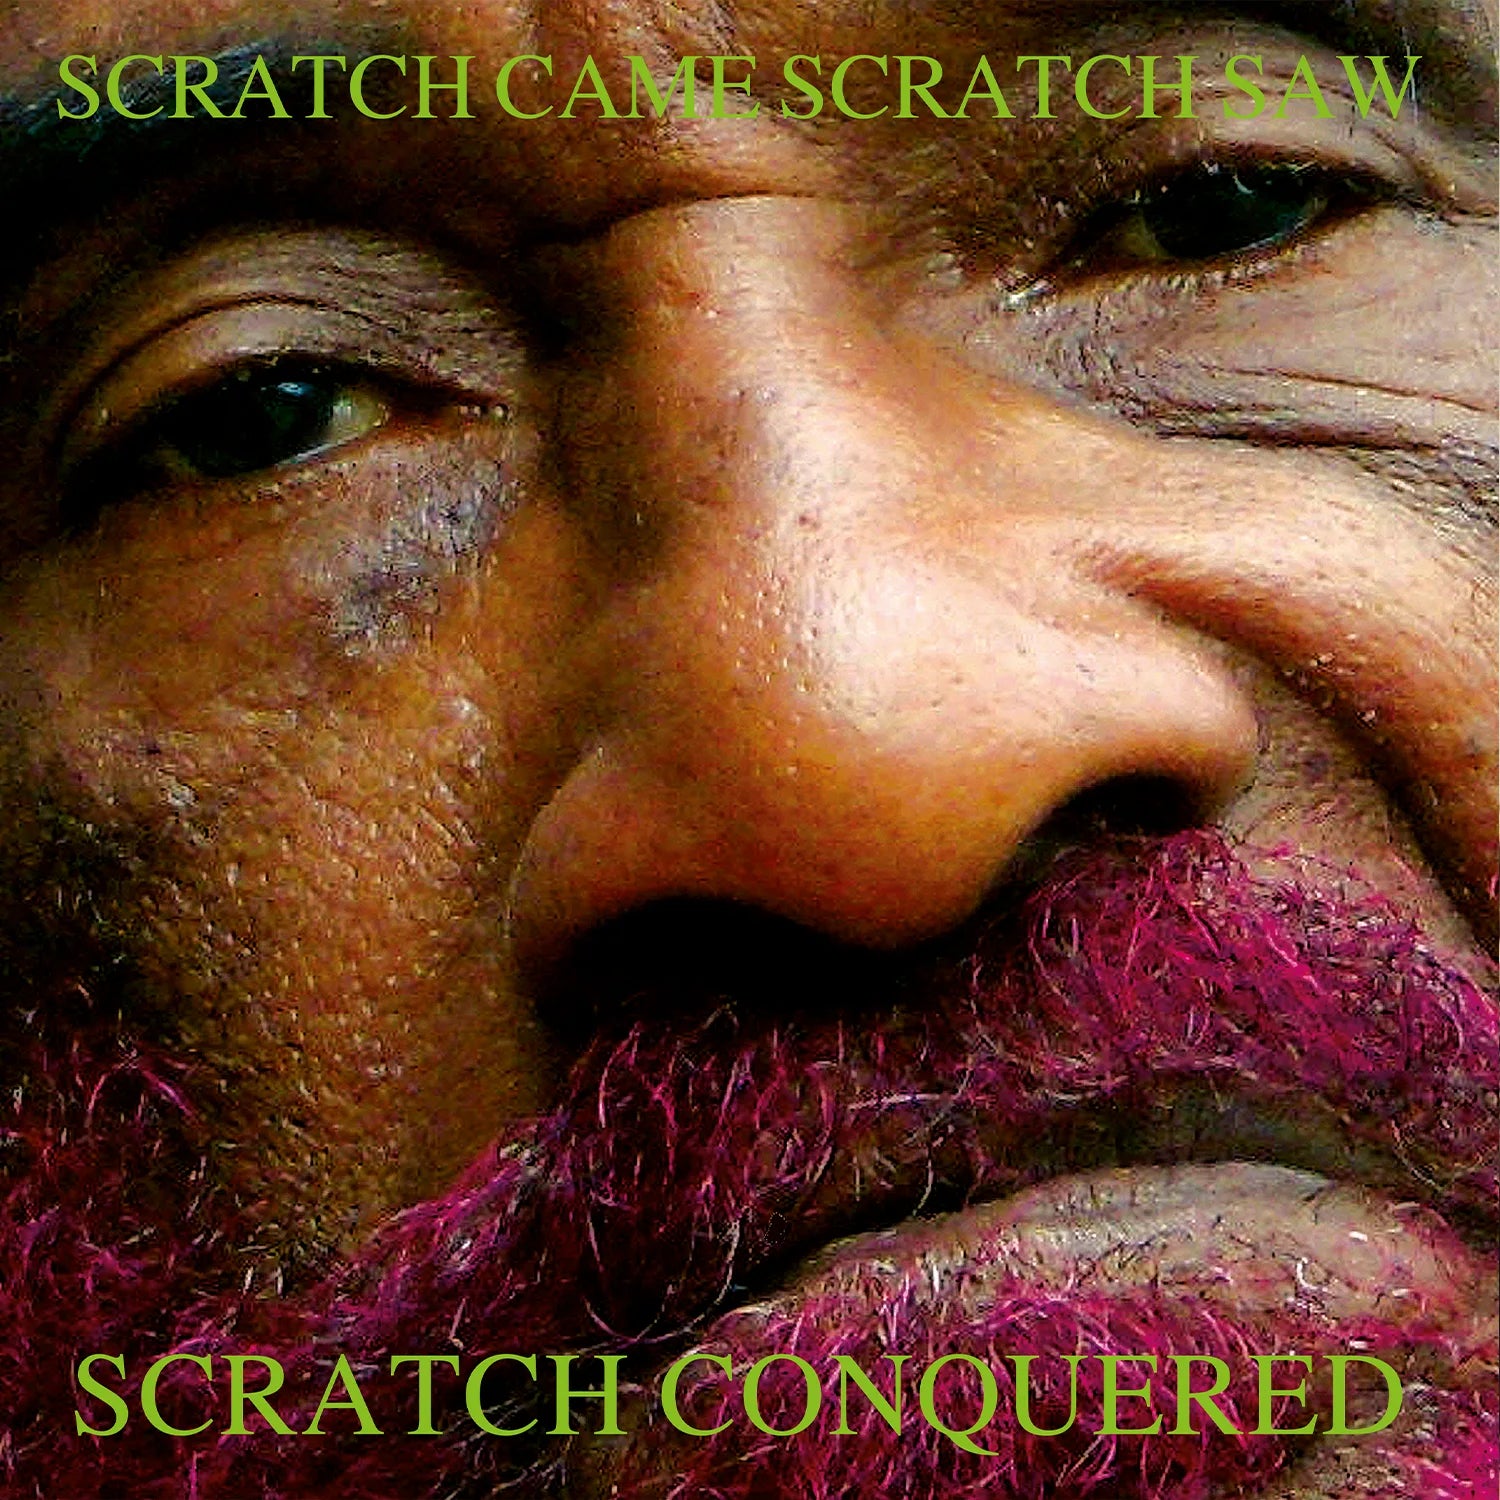 Scratch Came, Scratch Saw, Scratch Conquered